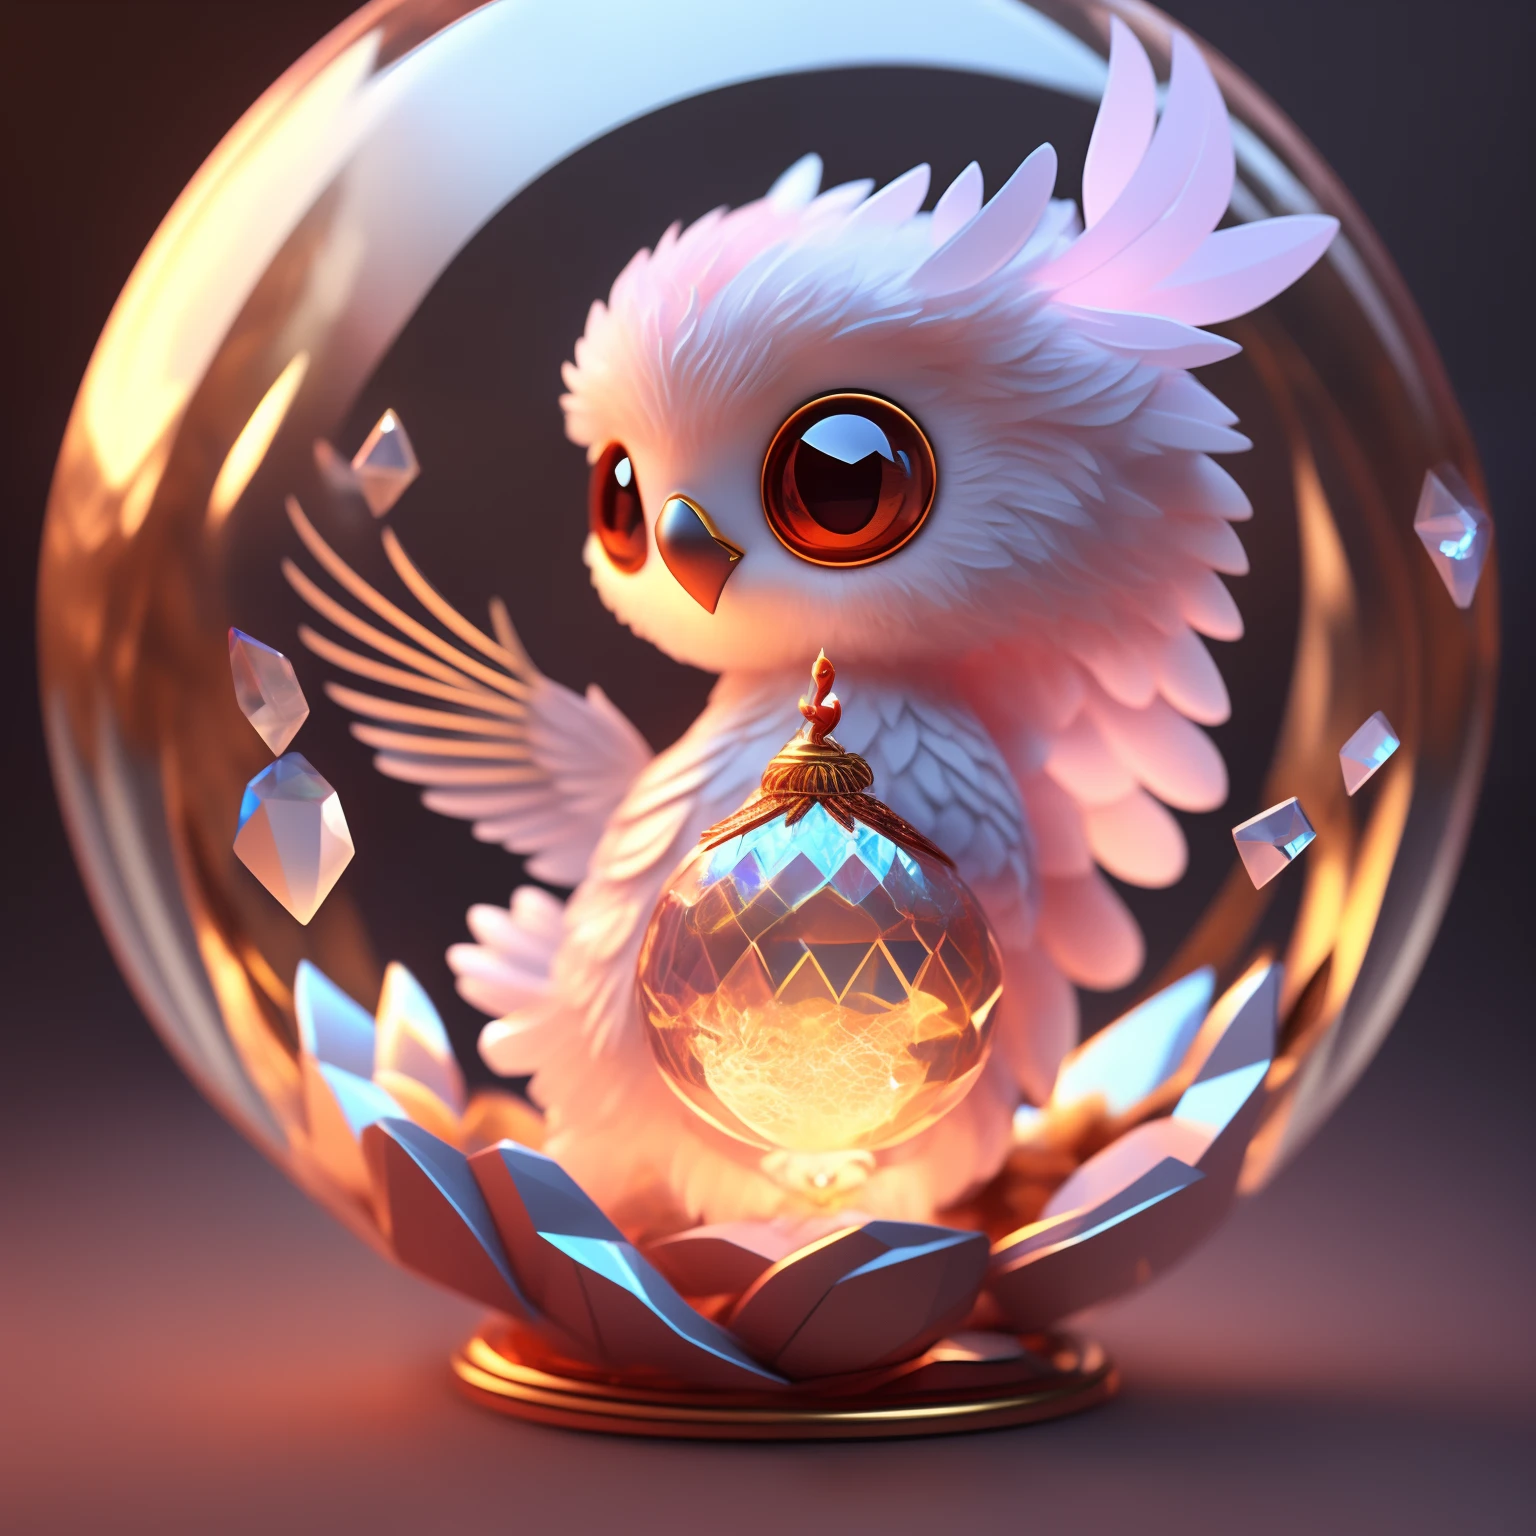 一只可爱的小凤凰，由水晶球制成，带有低多边形眼睛的高度详细复杂的概念艺术趋势 artstation 8k